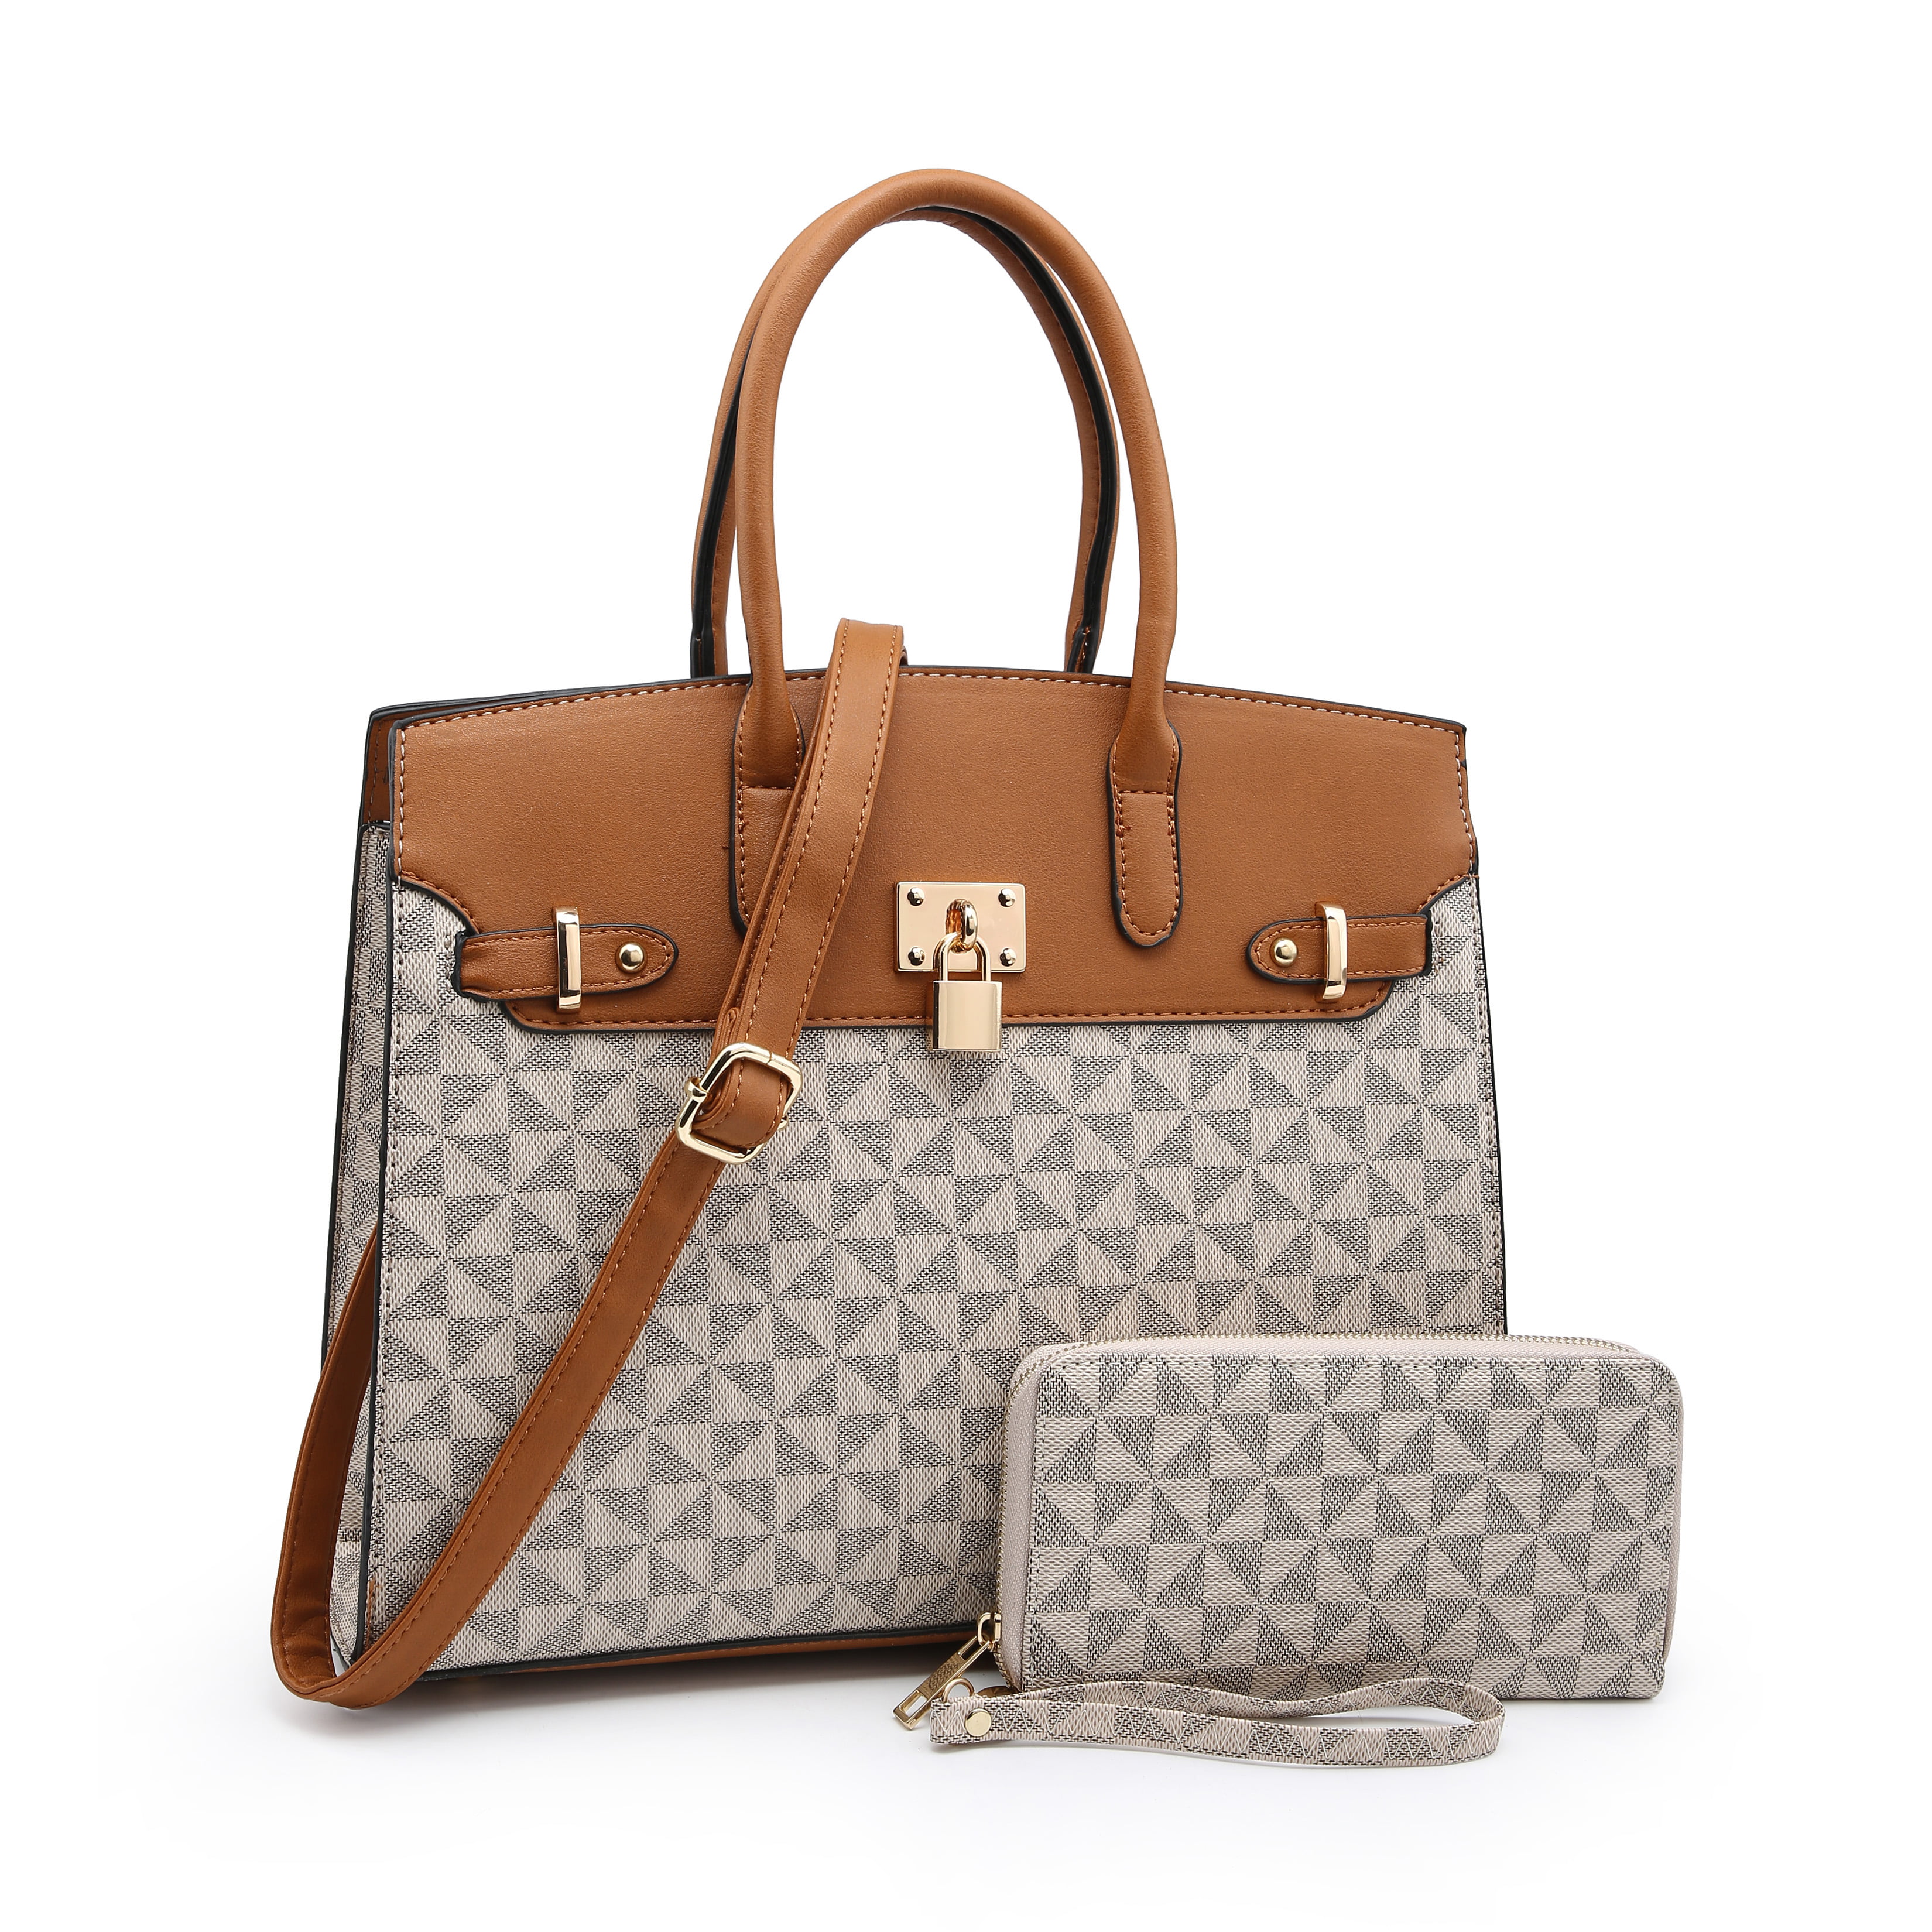 POPPY - 2020 New POPPY Handbags Set 2 in 1 Women&#39;s Top Handle Satchel Totes Handbag with Wallet ...